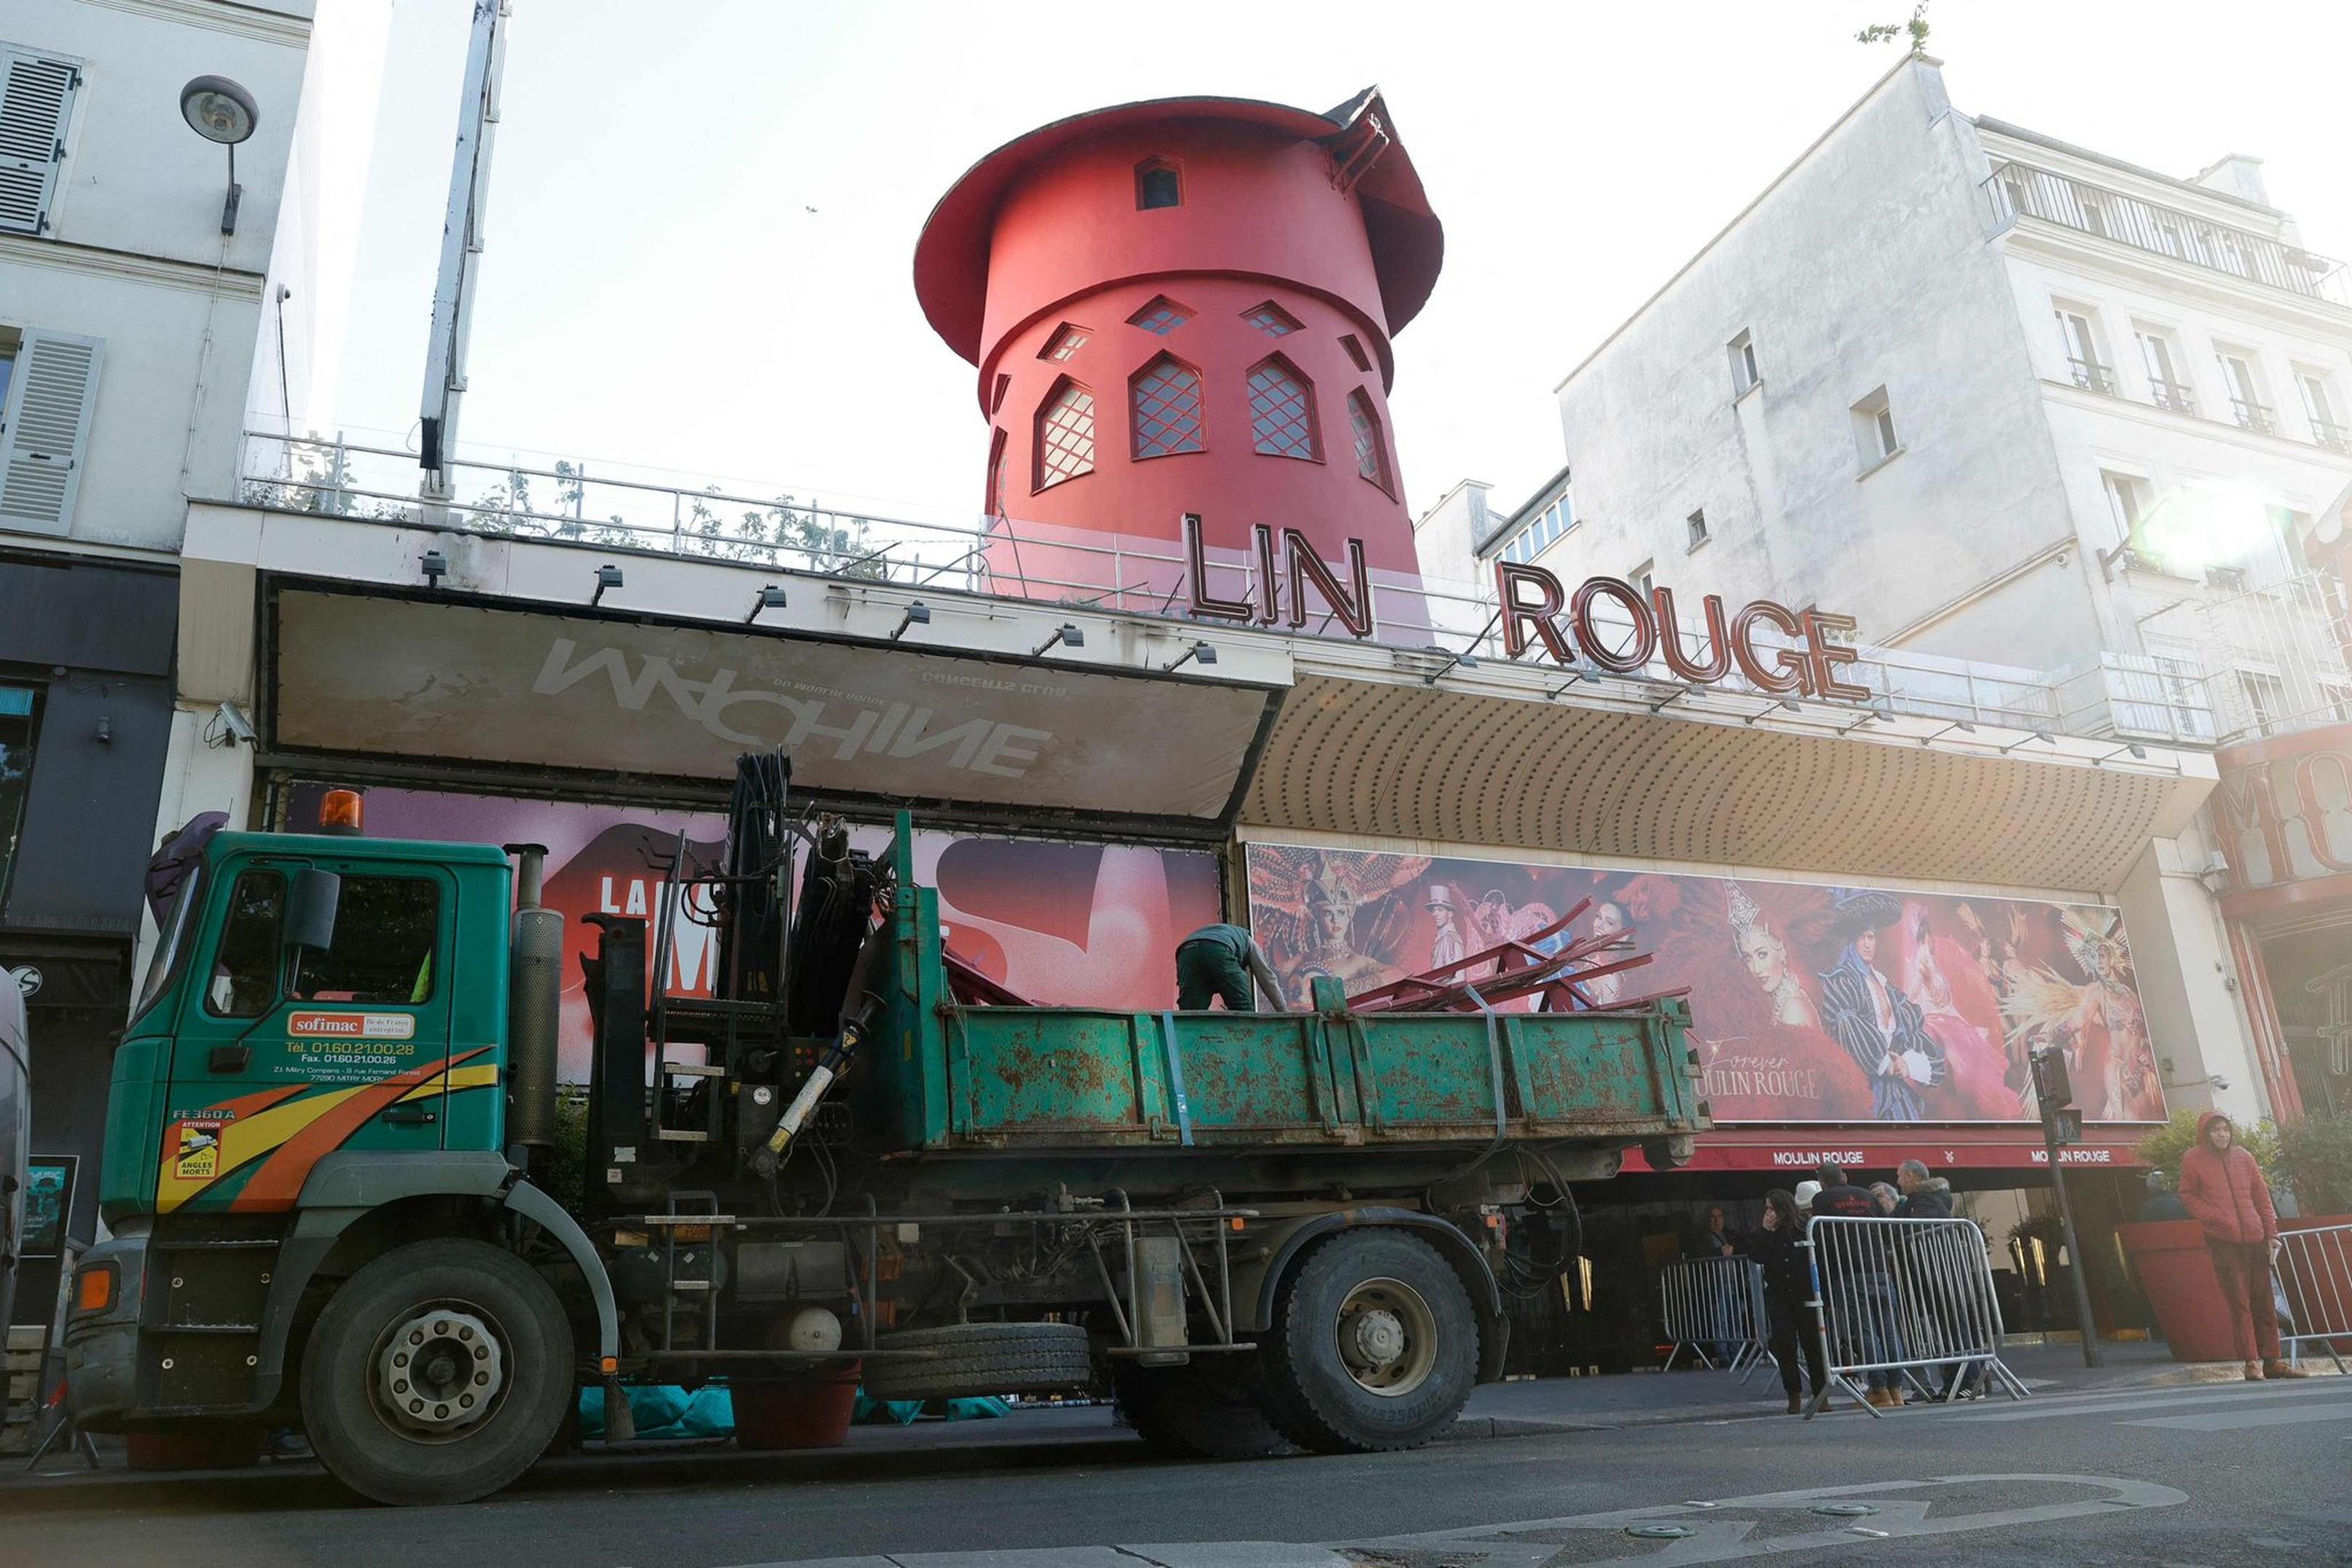 Arbeiter sichern den Bereich vor dem Kabarett, nachdem die Flügel des Windrads des „Moulin Rouge“ in der Nacht abgestürzt sind.